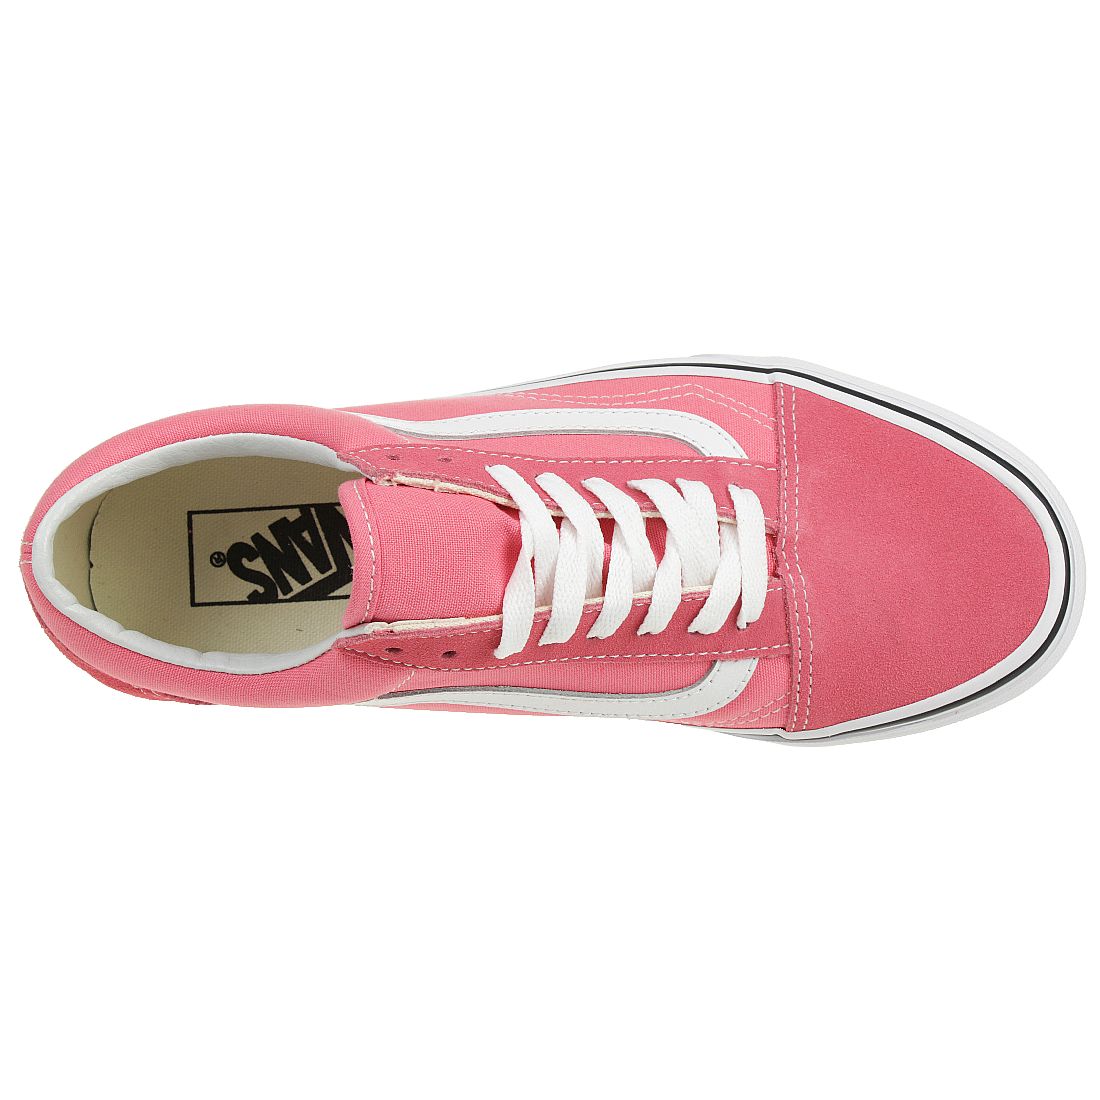 VANS Old Skool Damen Sneaker Skate Schuhe Canvas pink